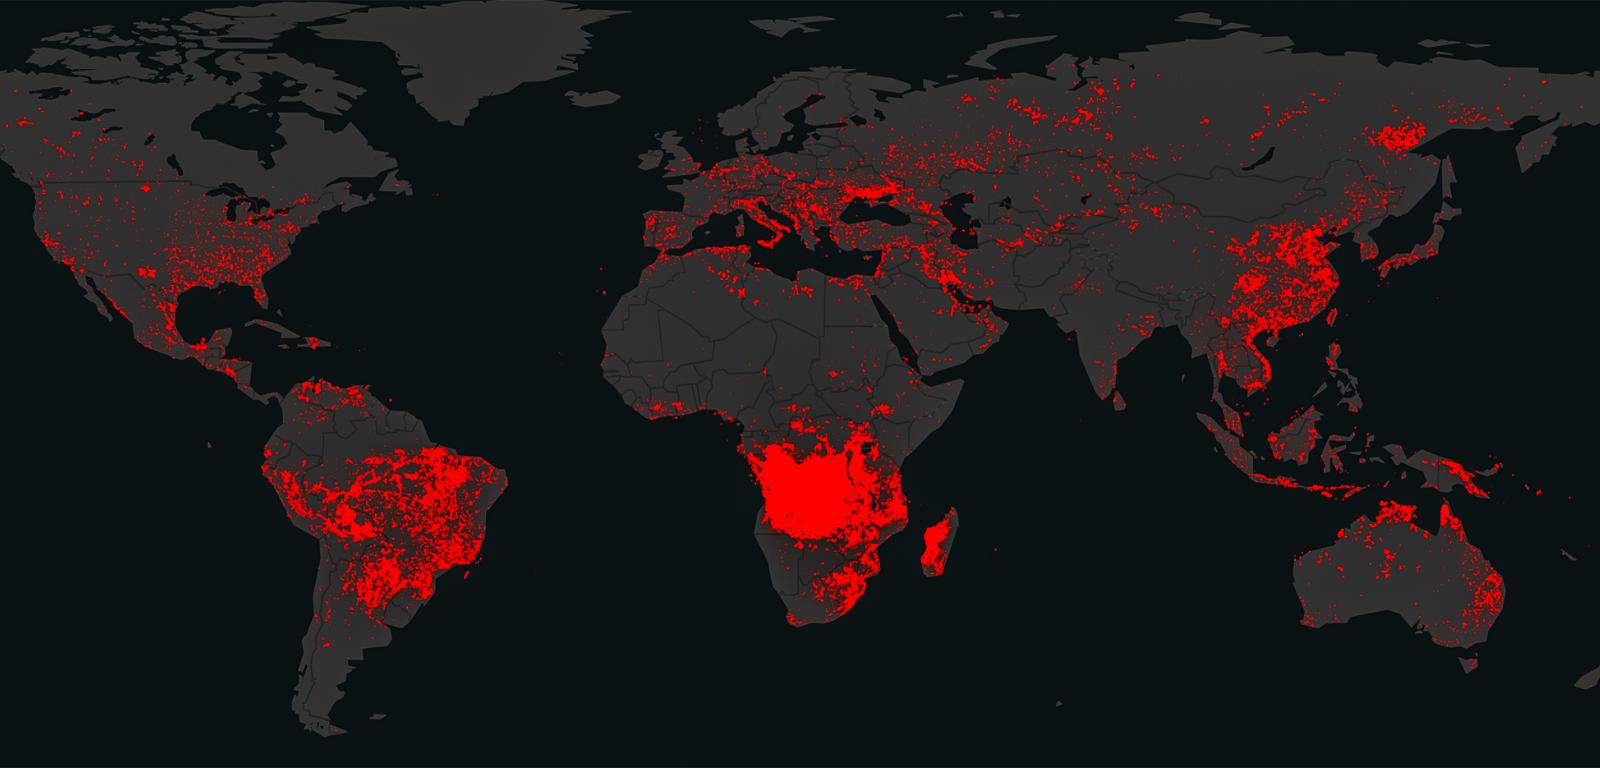 Mapa NASA z sierpnia 2022 r. pokazująca dzikie pożary (wildfires) obszarów naturalnych – lasów, łąk czy torfowisk – które wybuchły na świecie z powodu upałów.